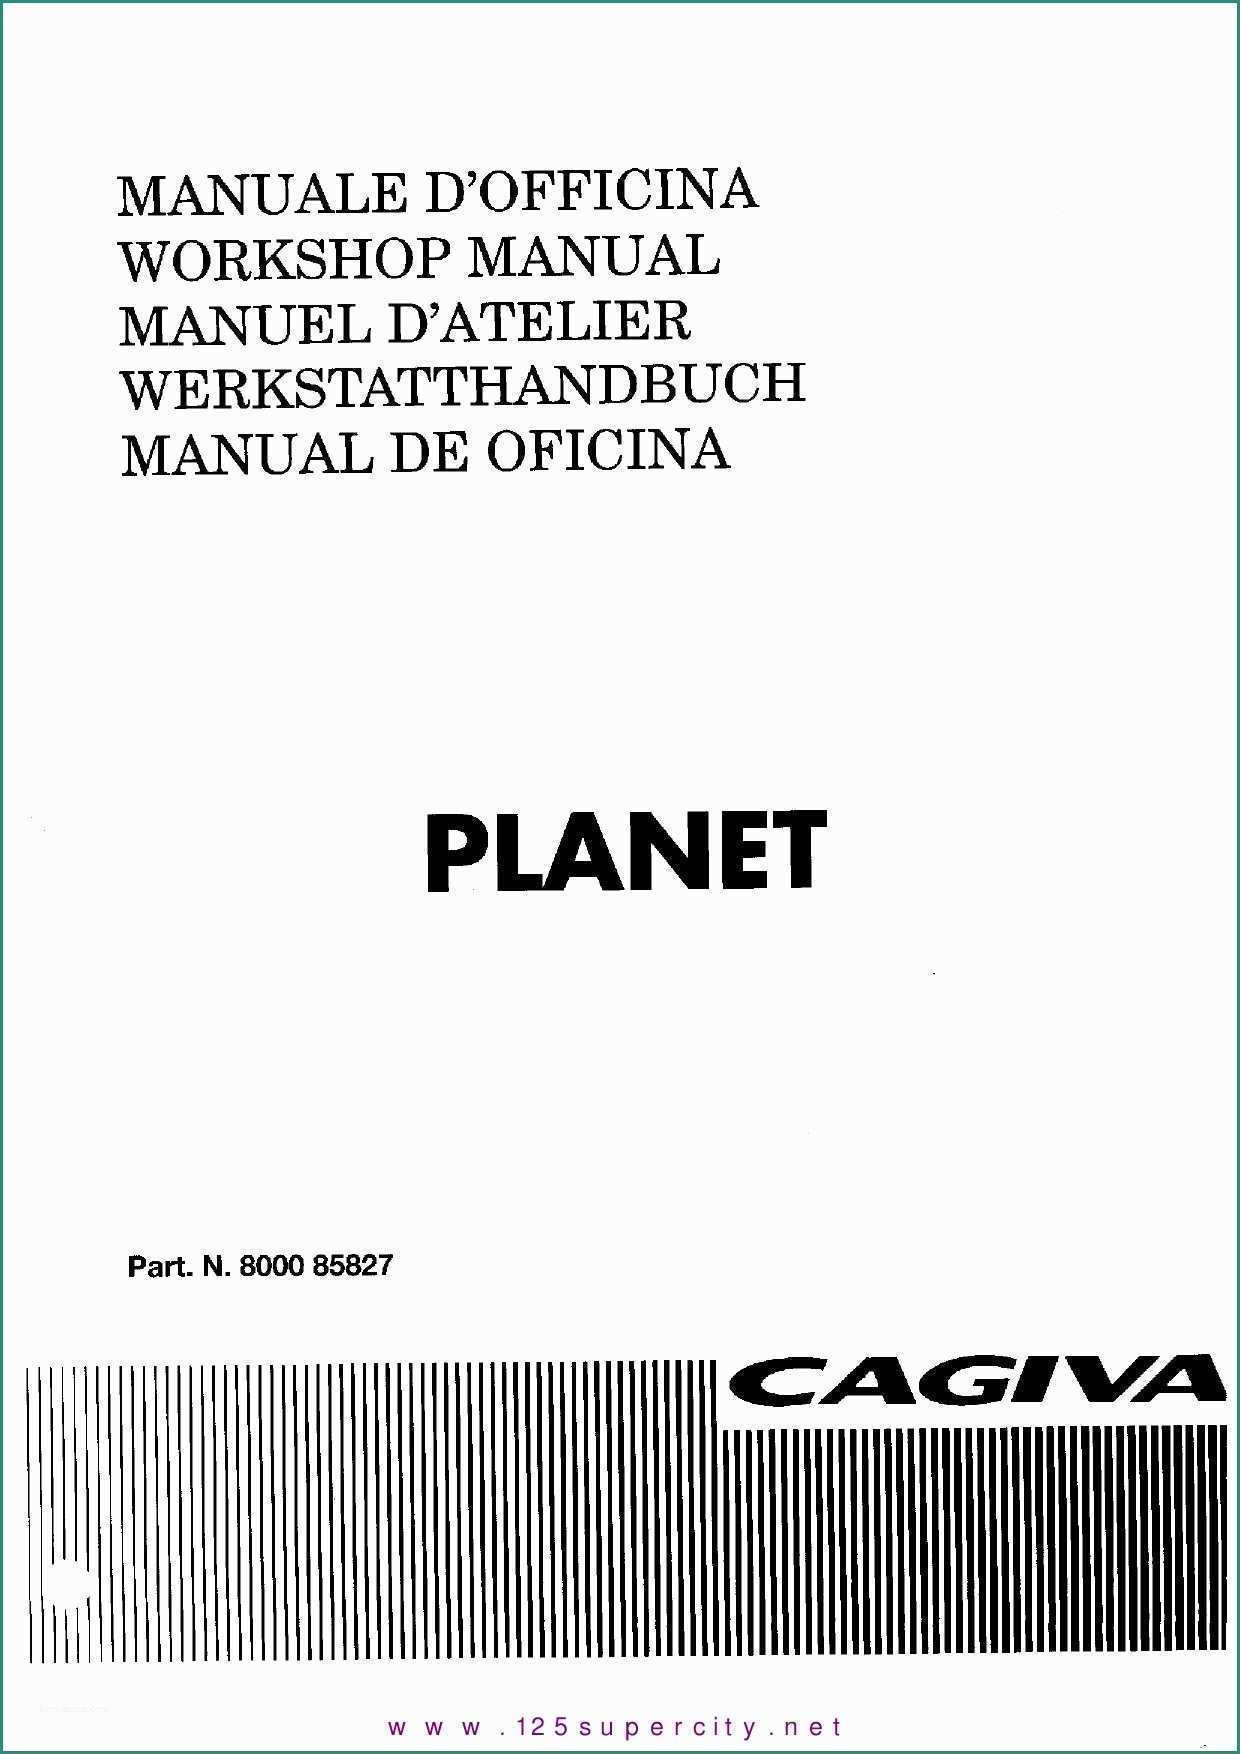 Pannelli Fonoassorbenti Adesivi E Manual Cagiva Planet by Christ Cfouq issuu